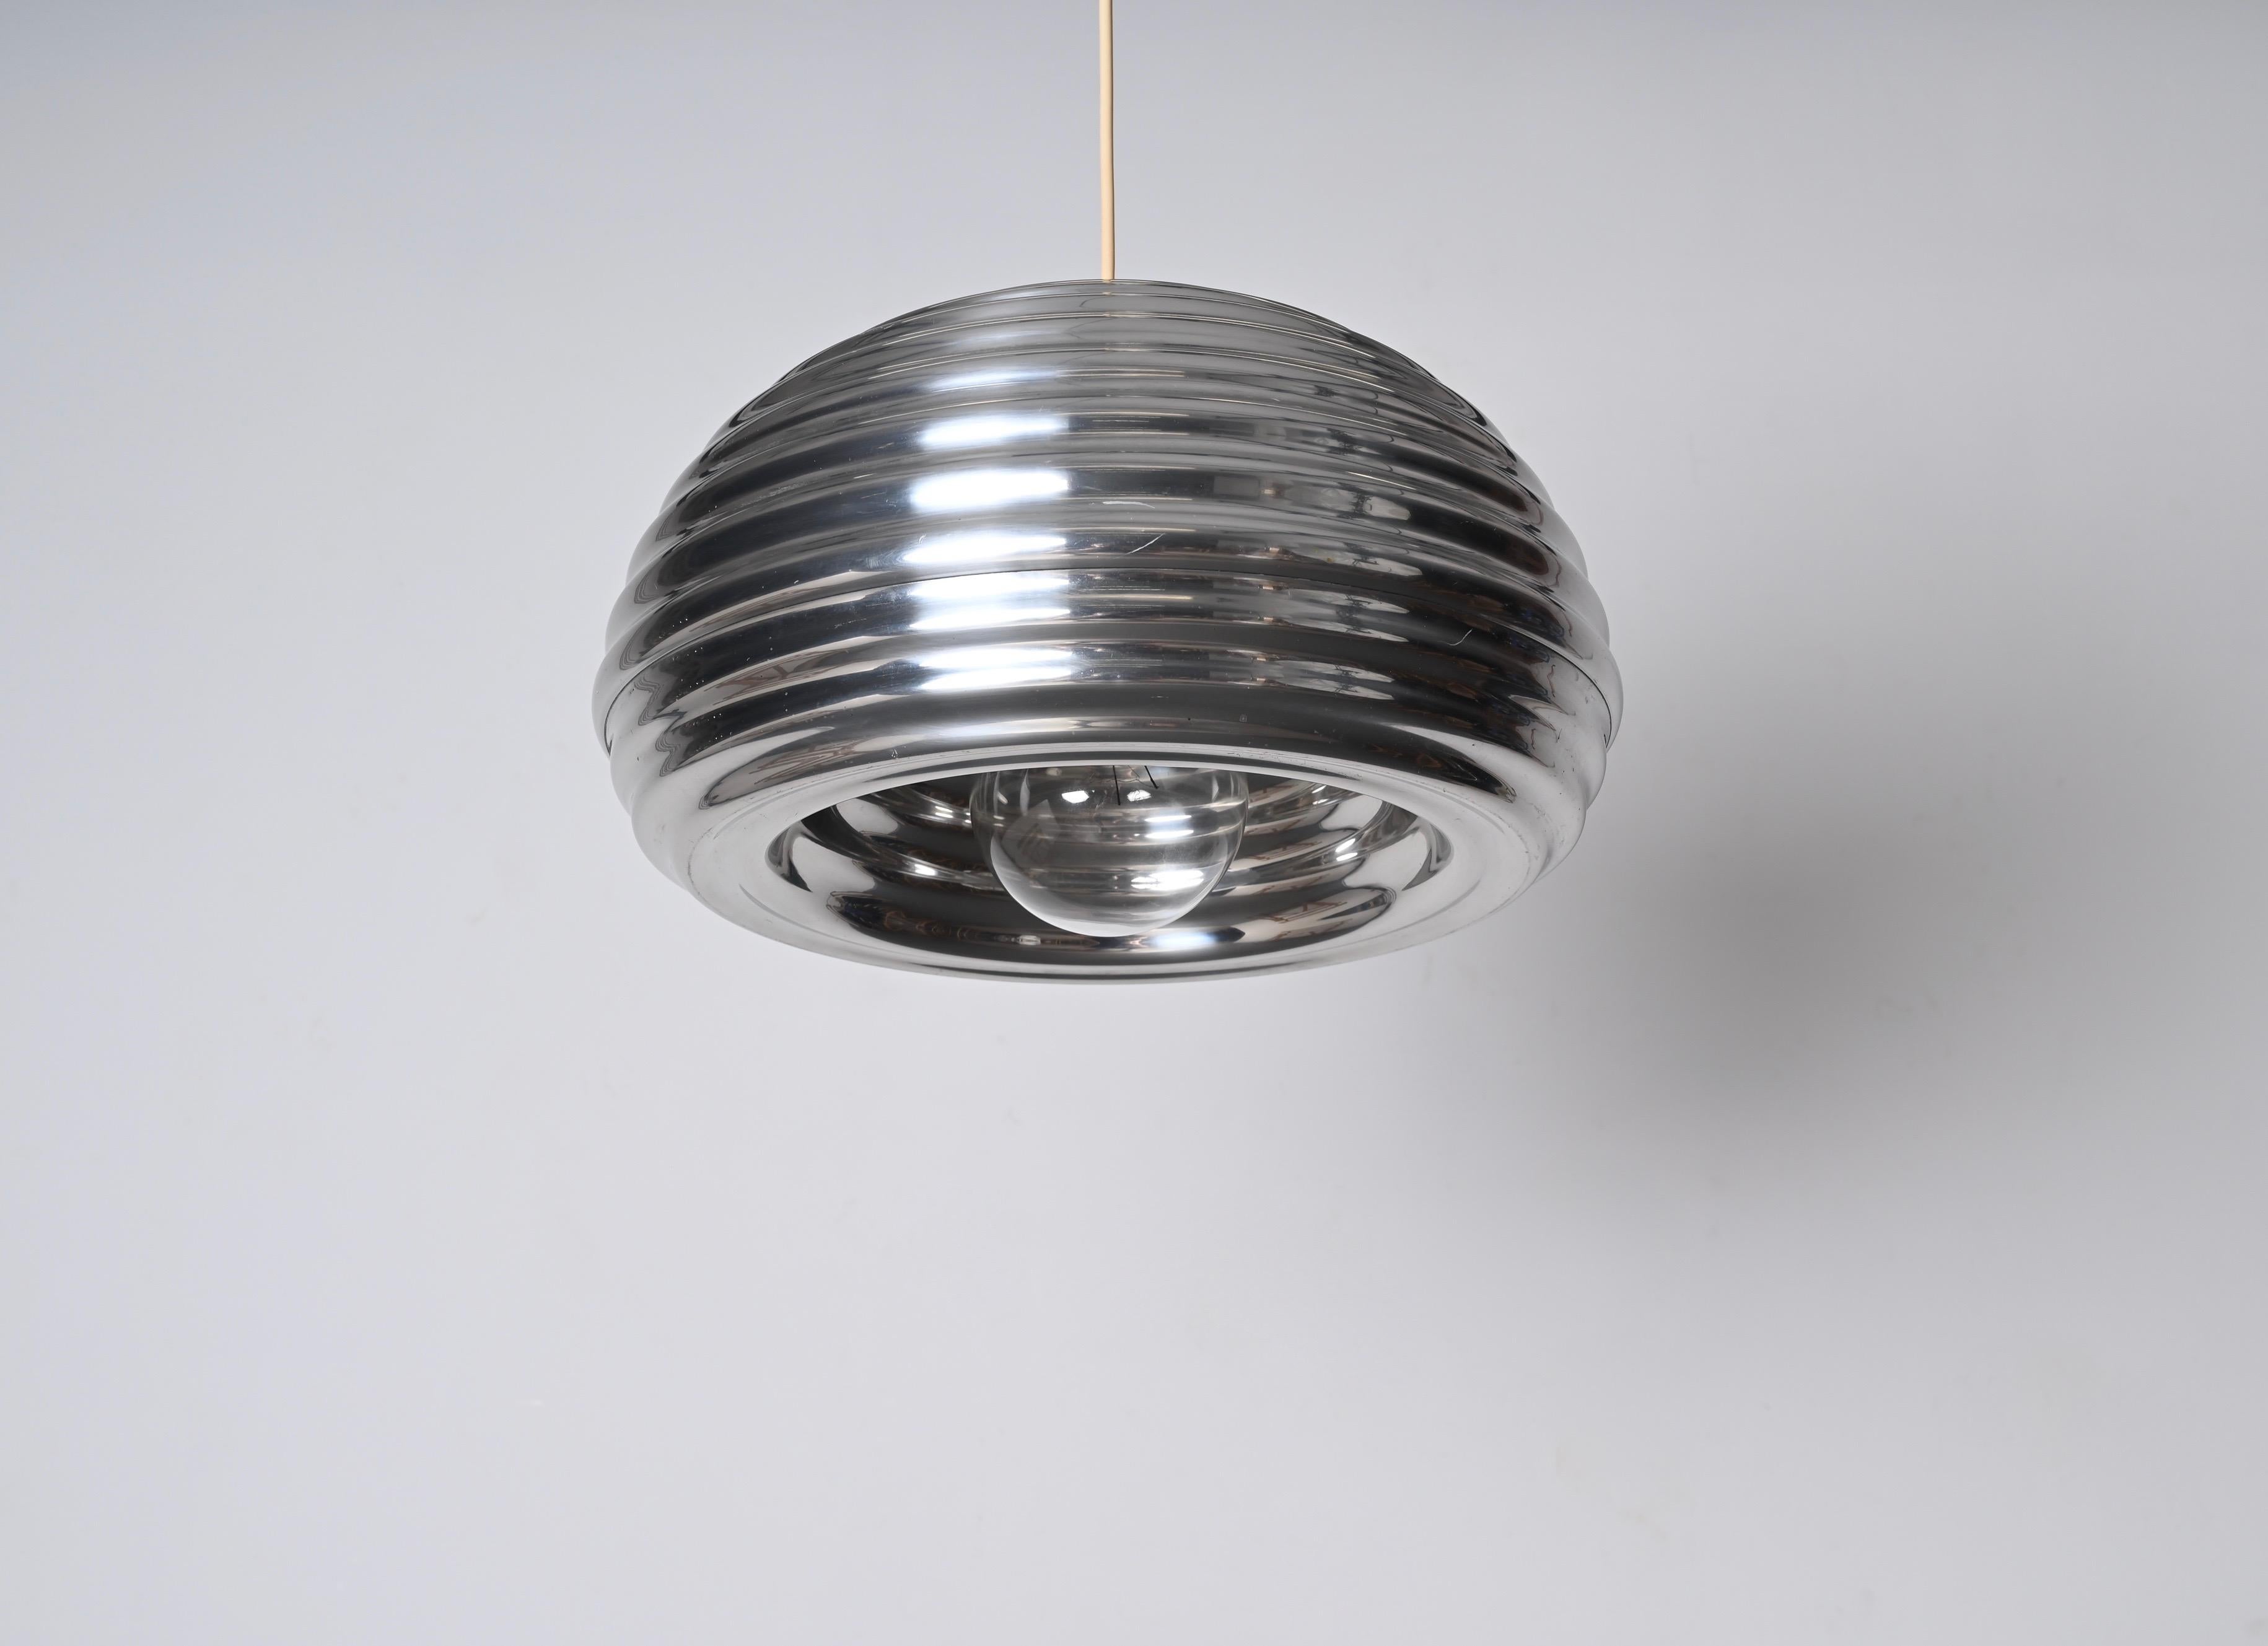 Fantastique lampe suspendue vintage Splugen Brau en aluminium conçue par Achille Castiglioni et produite par Flos dans les années 1960 en Italie. Ce joli pendentif possède encore son autocollant d'origine signé par Flos.

Cette magnifique suspension